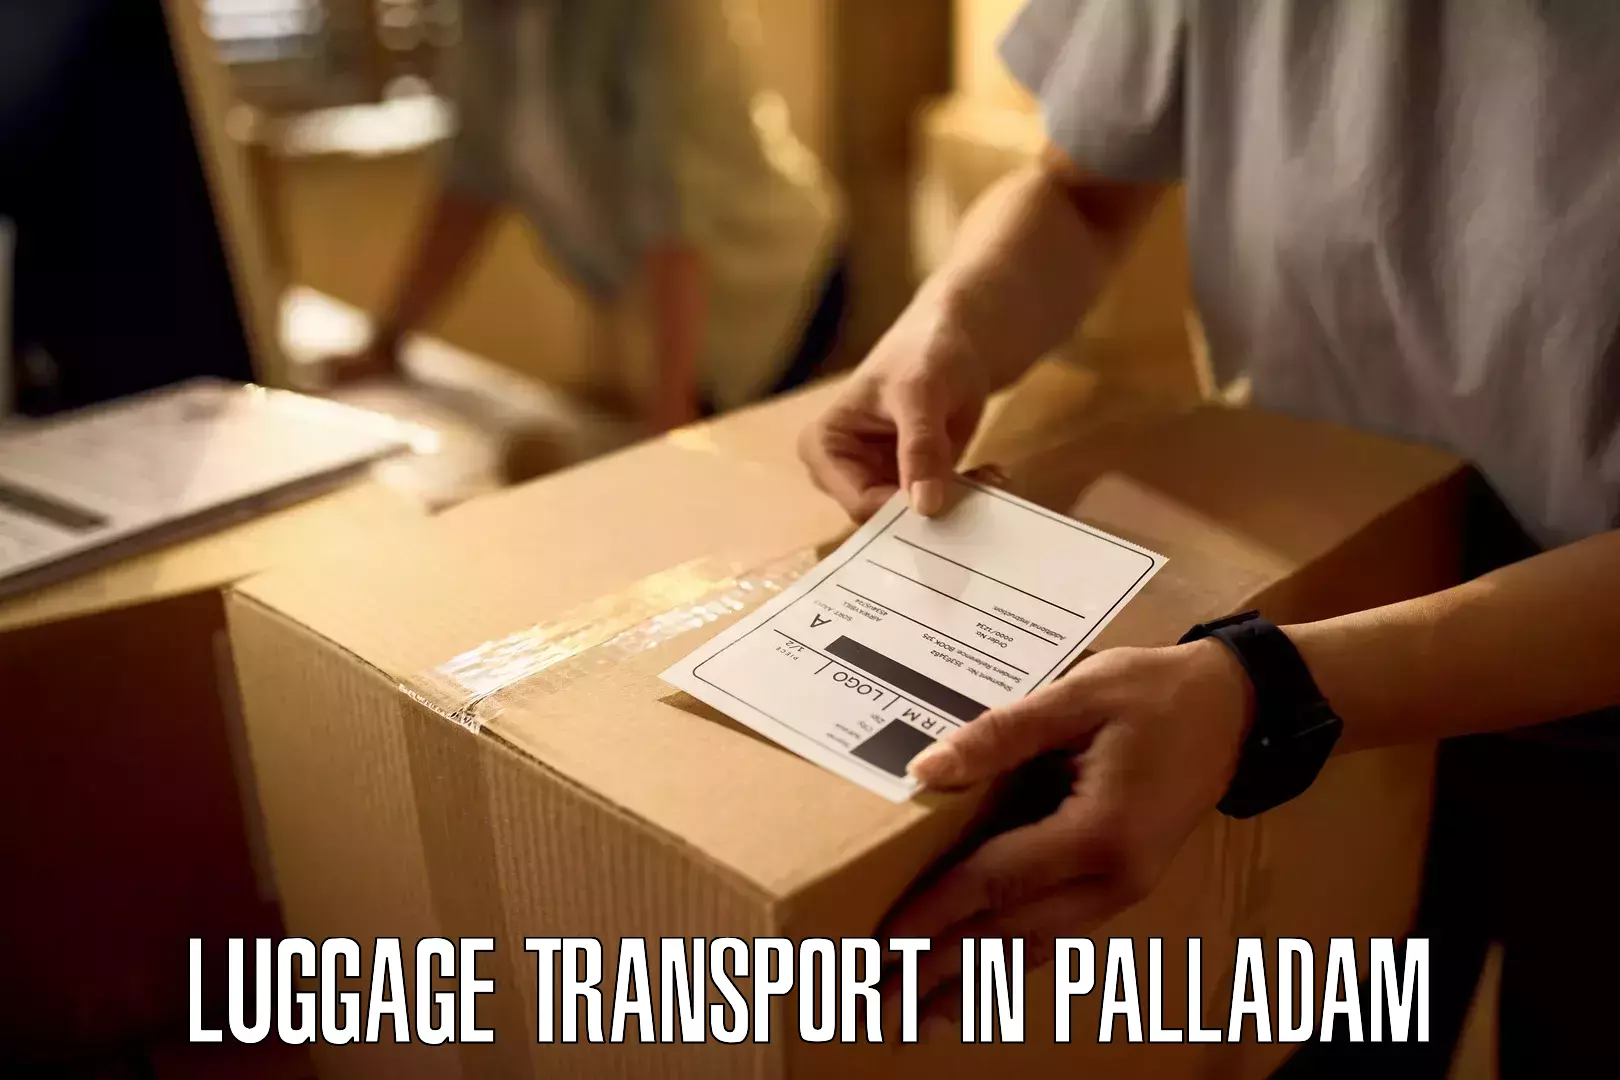 Luggage transport rates calculator in Palladam